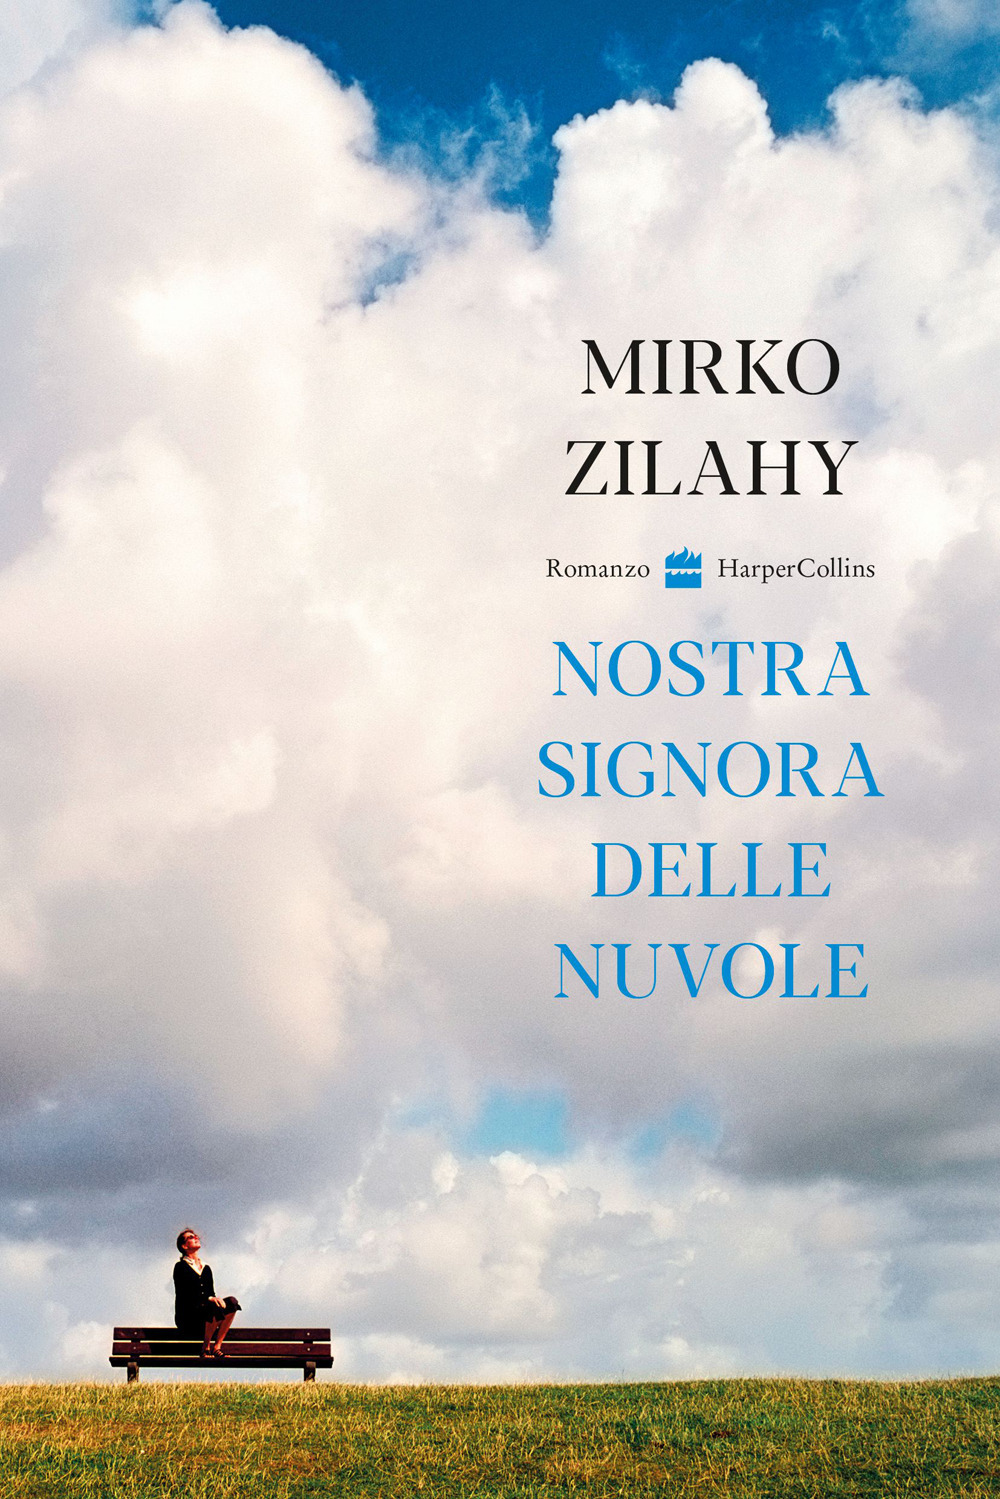 Nostra signora delle nuvole - Mirko Zilahy - HarperCollins Italia